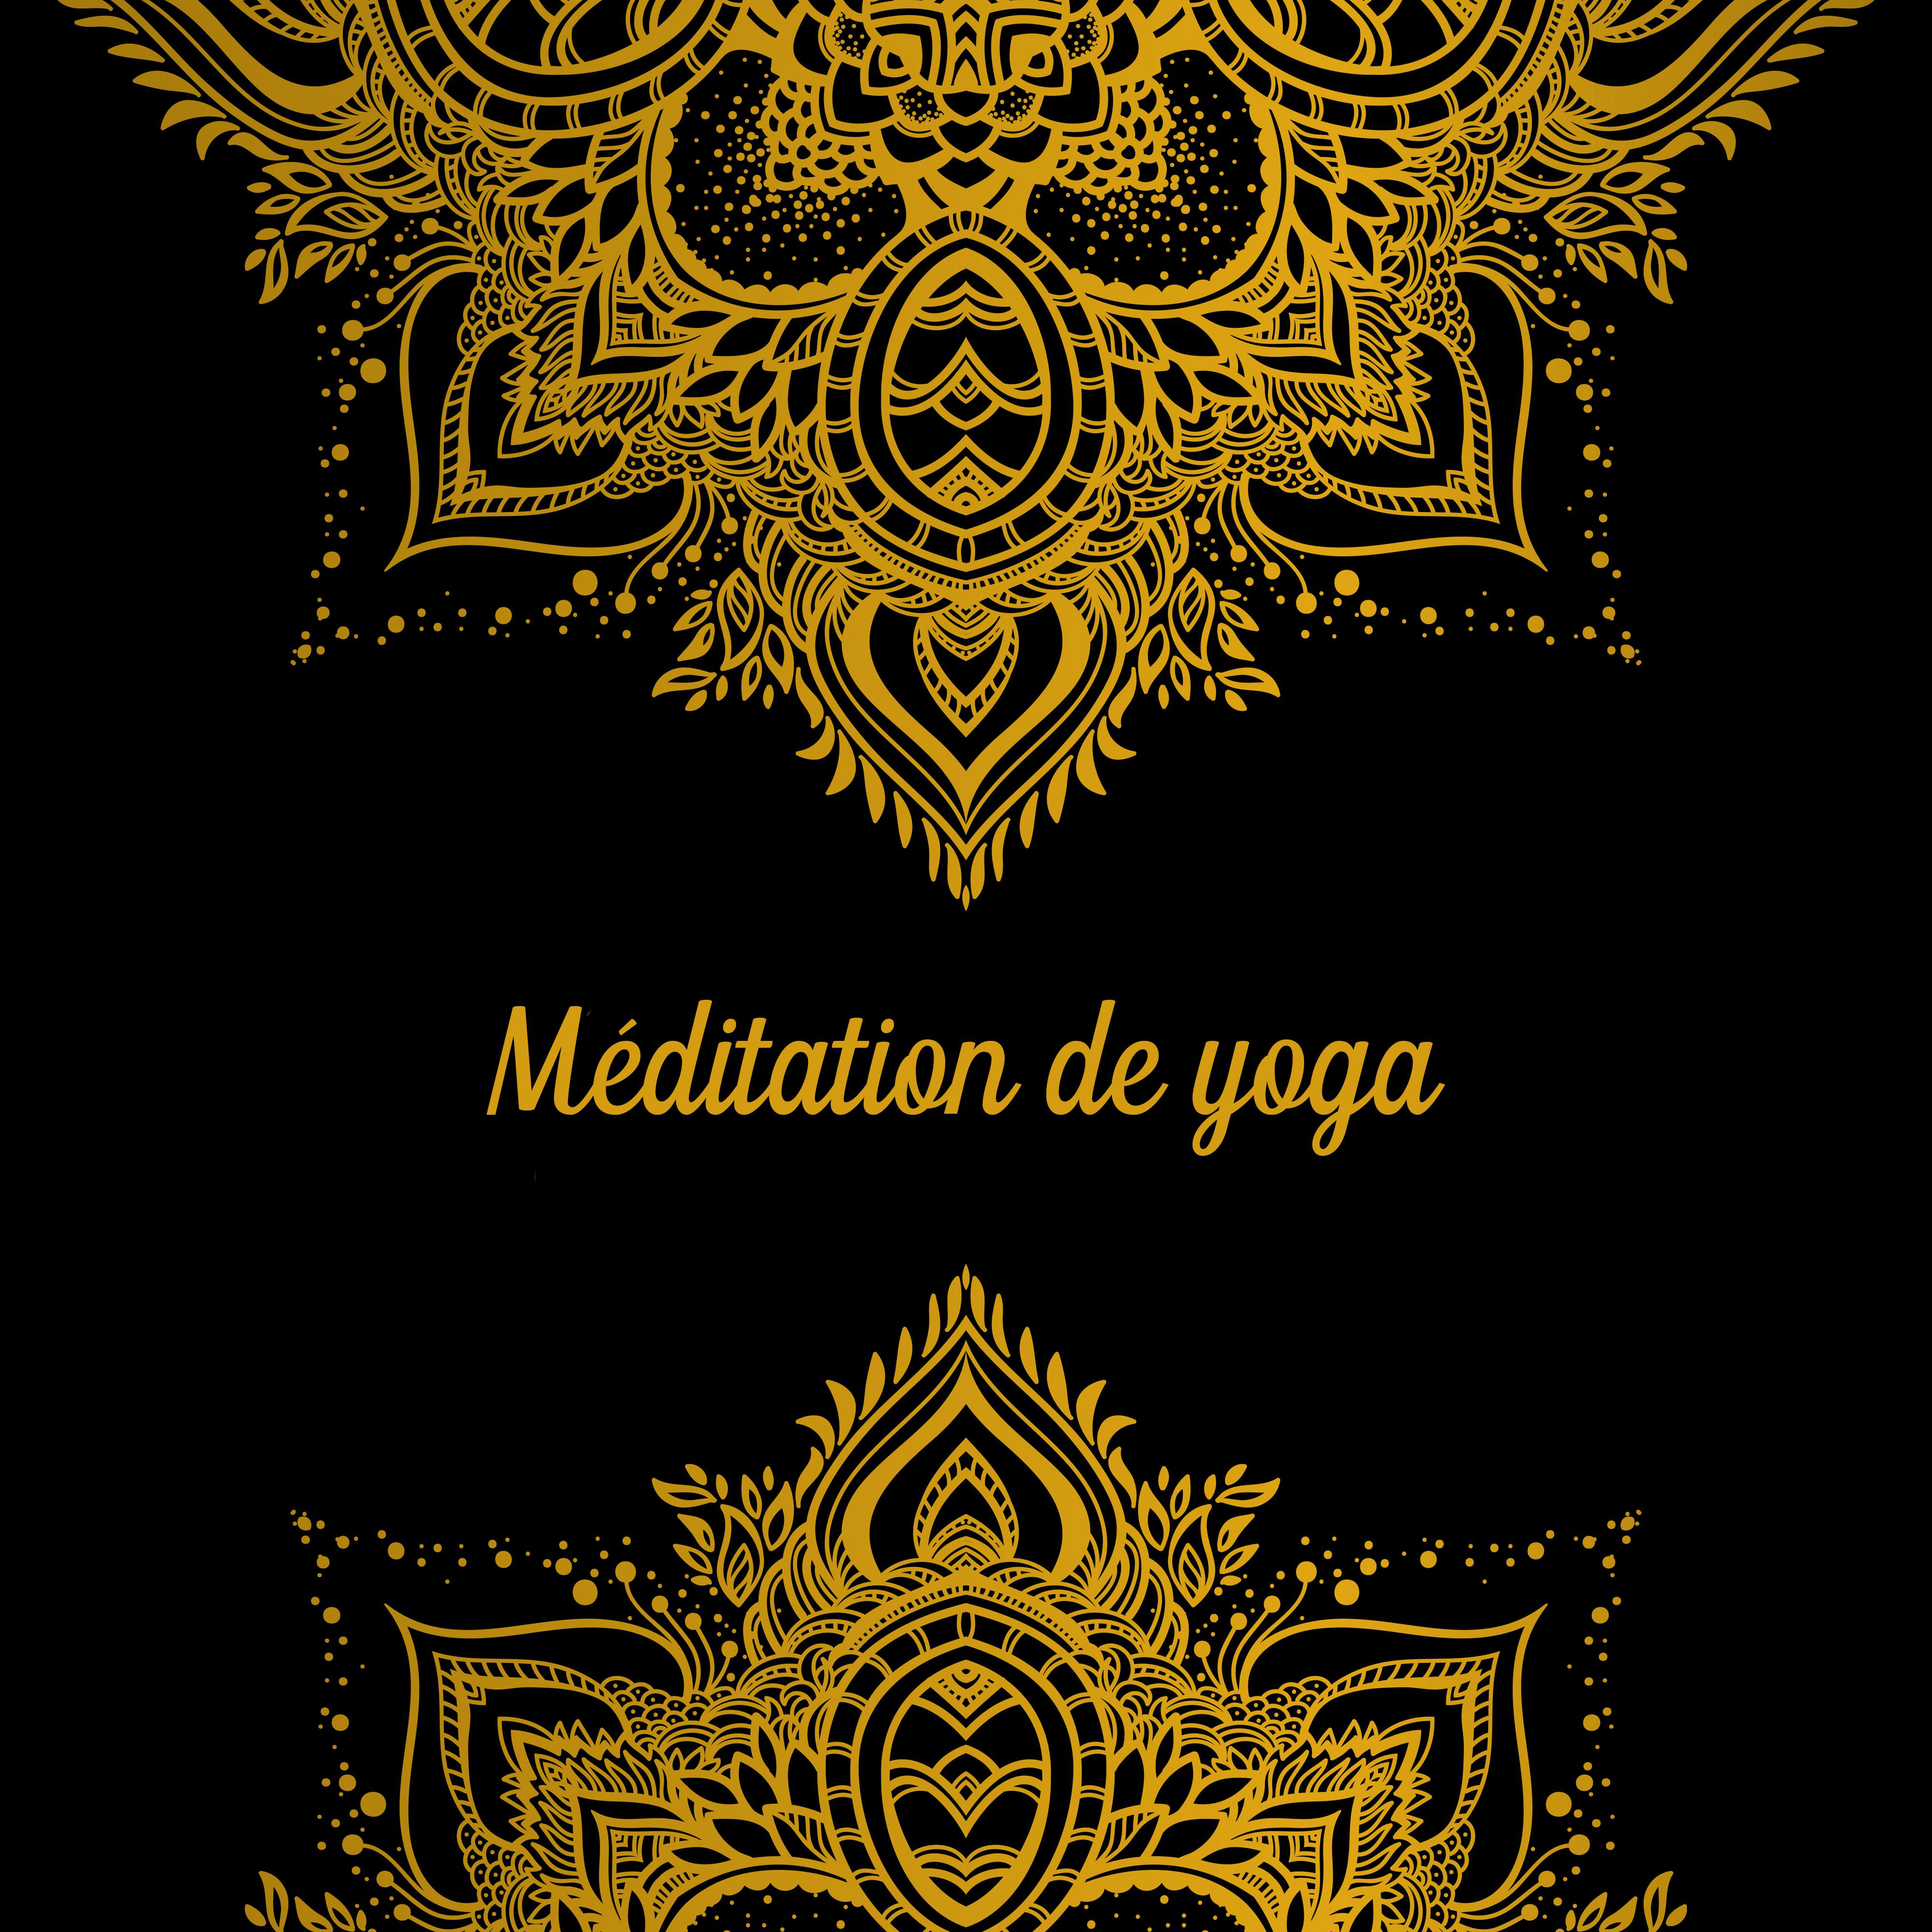 Me ditation de yoga  The rapie de me ditation, Bouddha, Lounge, Relaxation profonde, Zen, Sons de la nature